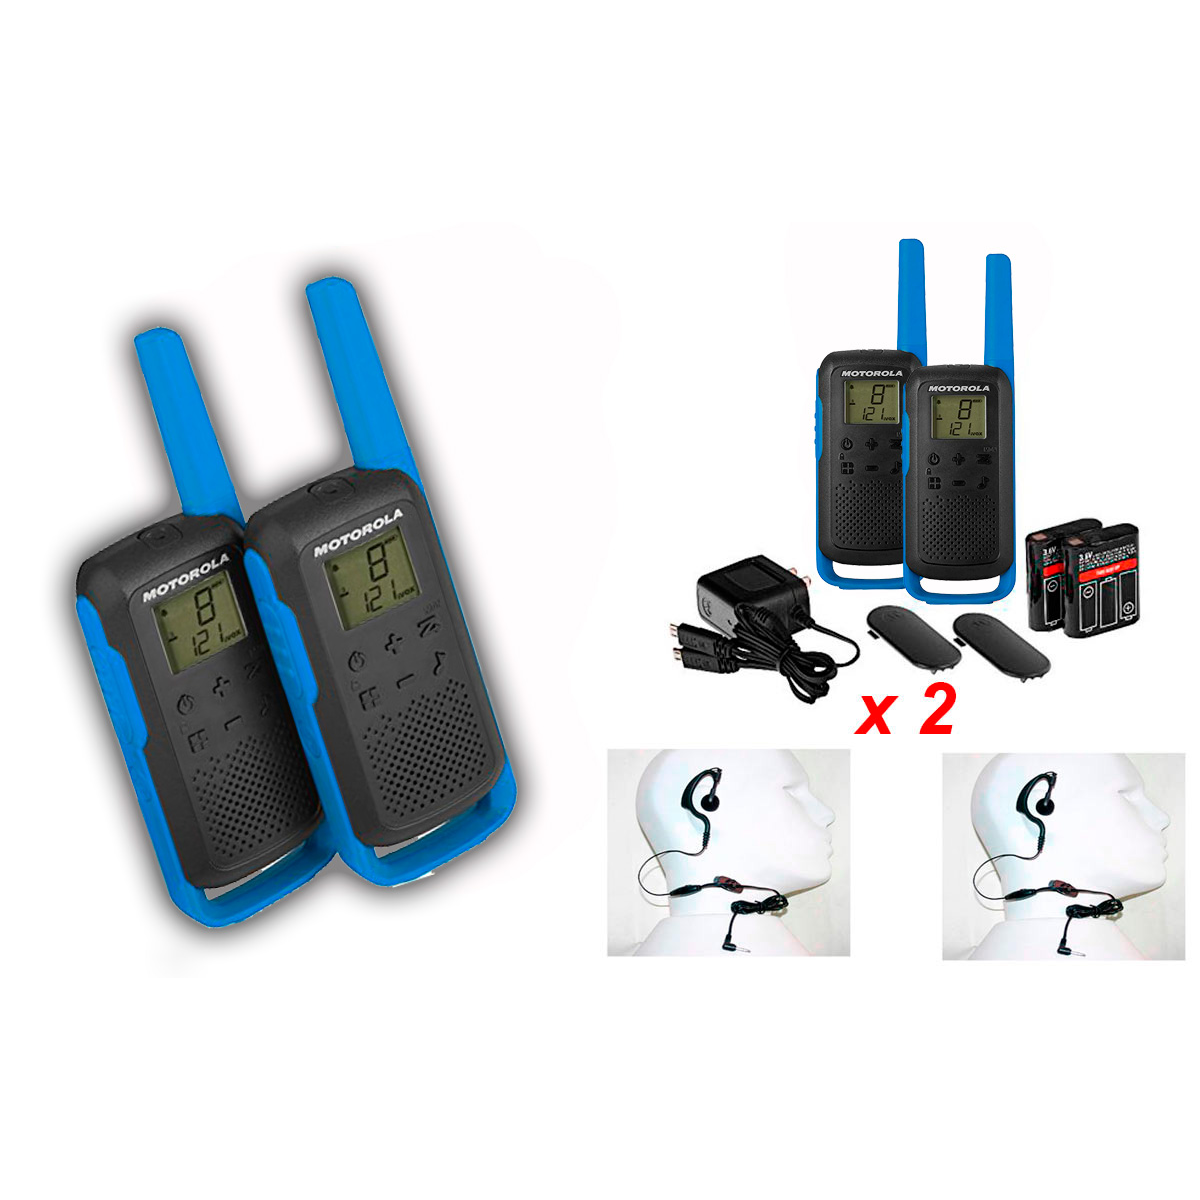 Motorola TKLR T62 parella de walkies ús lliure PMR446 16 canals + 2 pinganillos